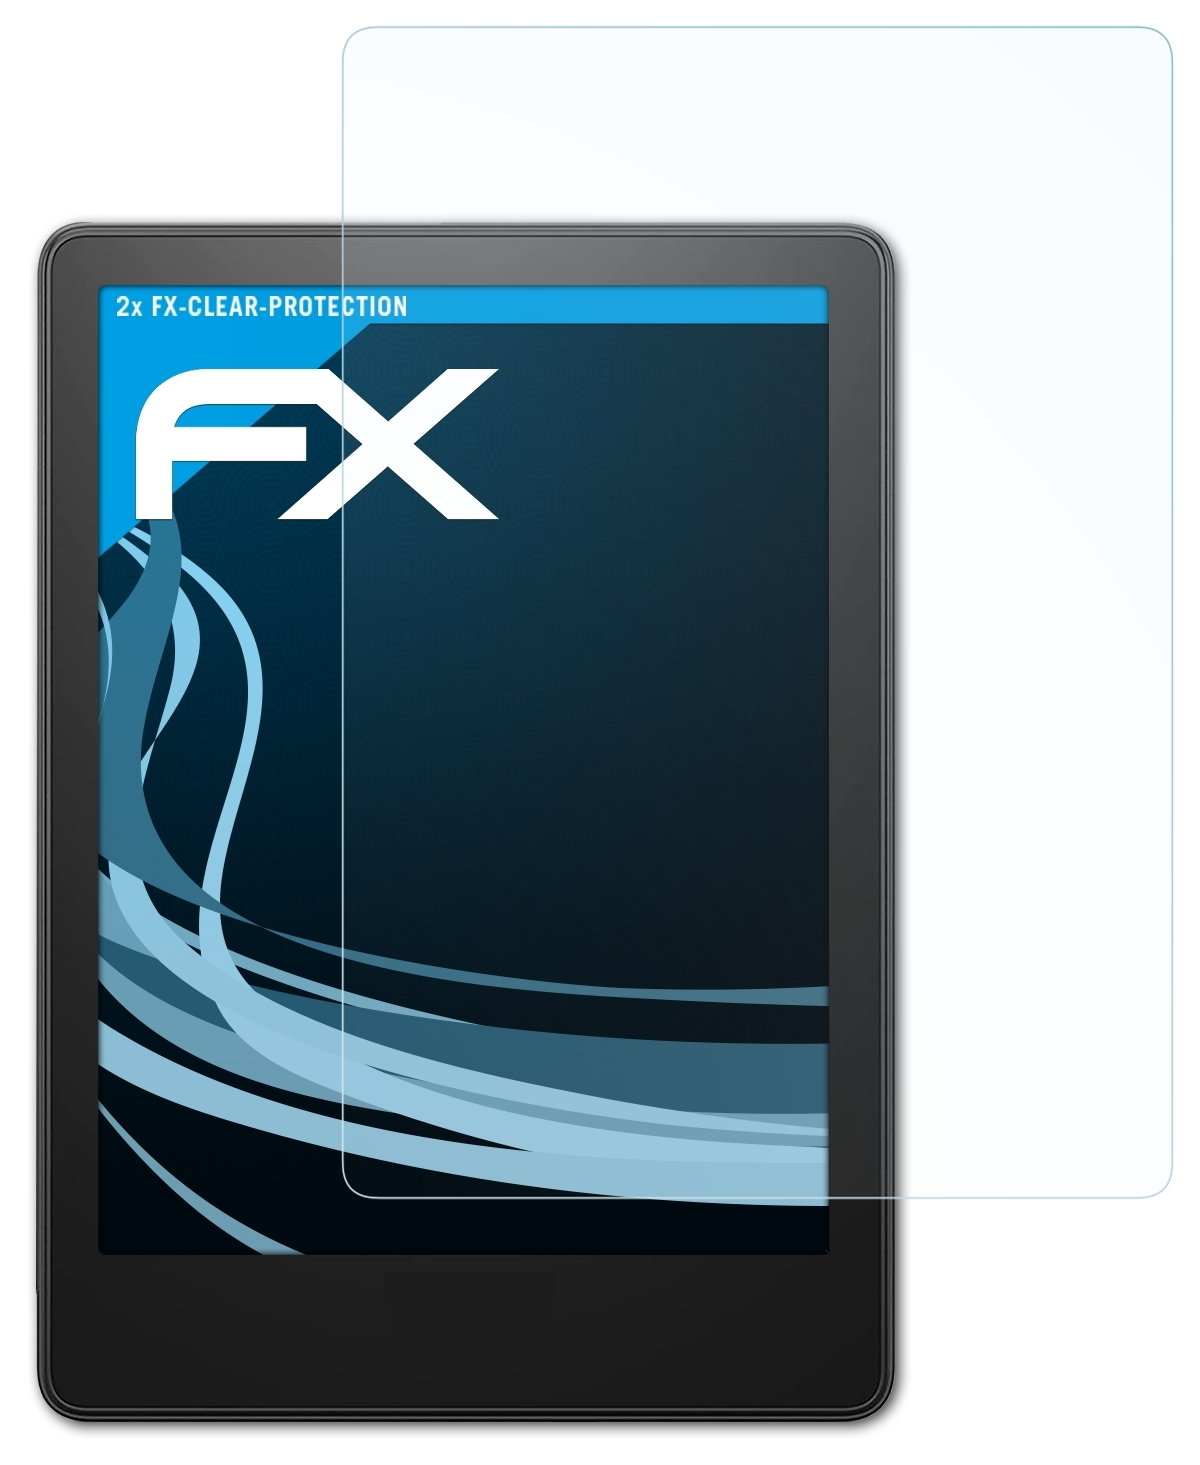 2x FX-Clear Generation ATFOLIX Paperwhite (11. Kindle Displayschutz(für 2021)) Amazon